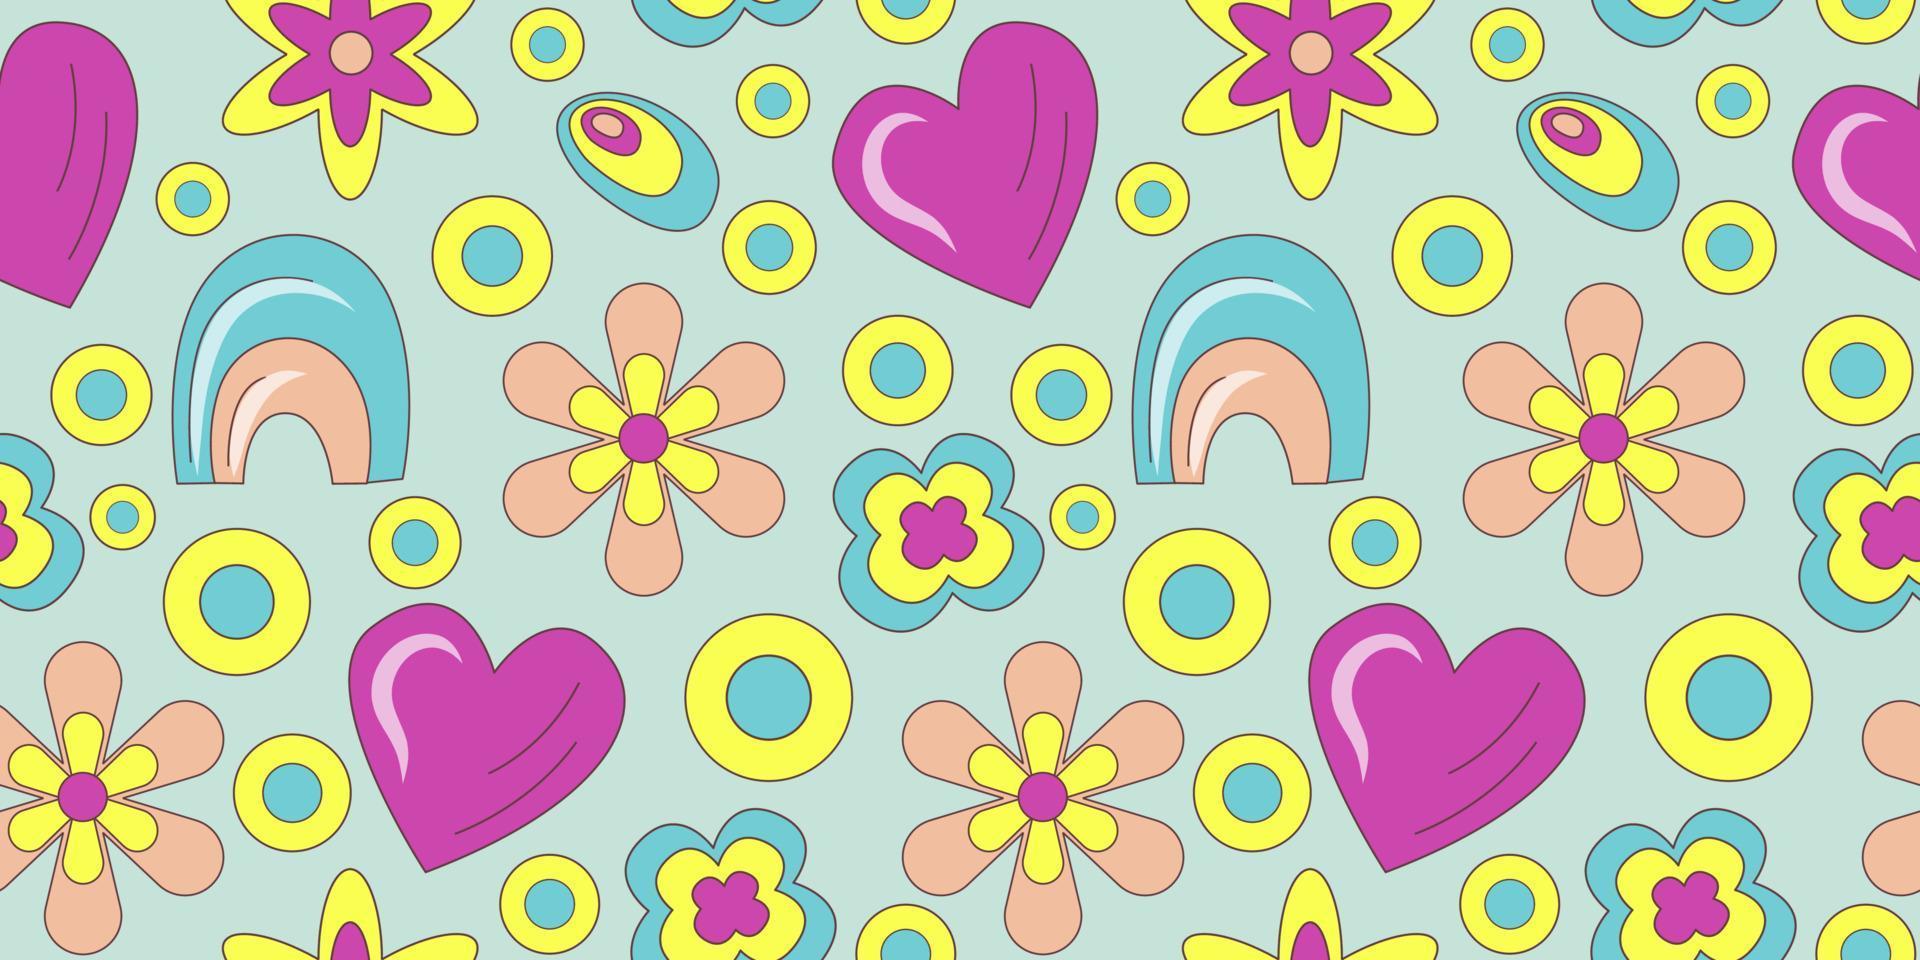 groovy patroon in doodle stijl op kleurrijke achtergrond. Jaren '70 retro bloemen naadloos patroon met hart en regenboog. eenvoudige vector groovy illustratie